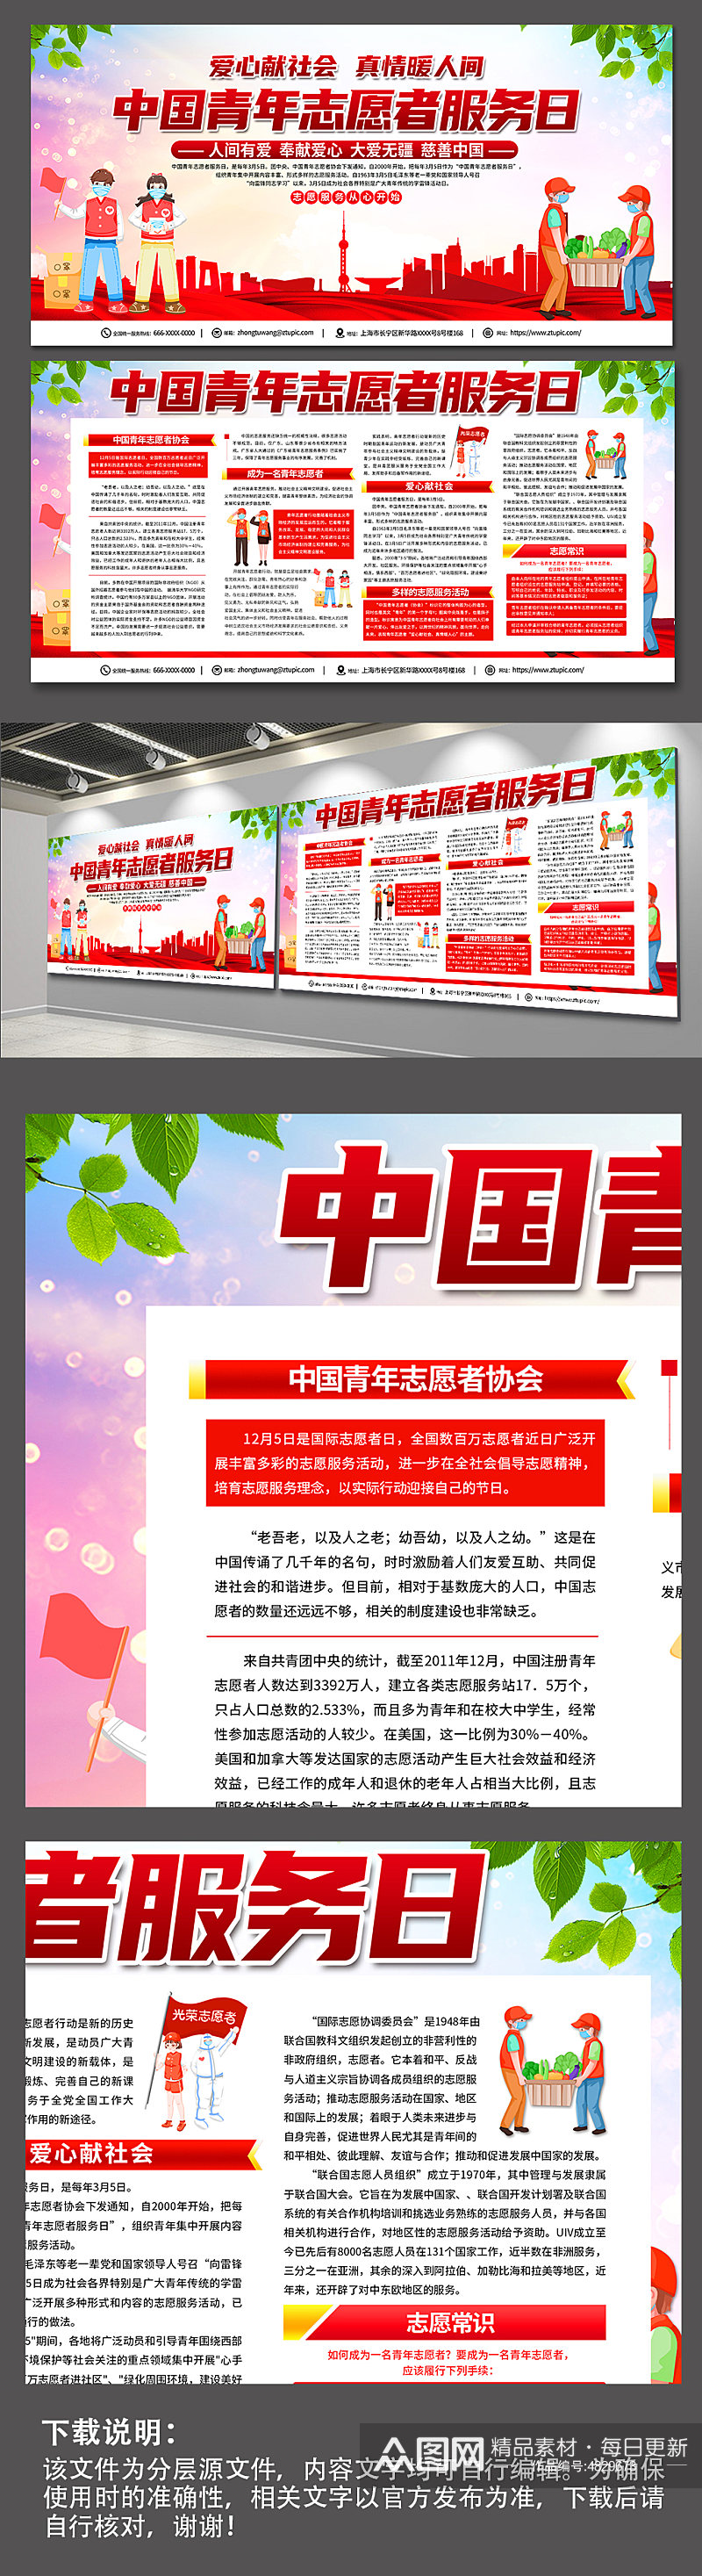 红色喜庆中国志愿者服务日内容宣传展板素材